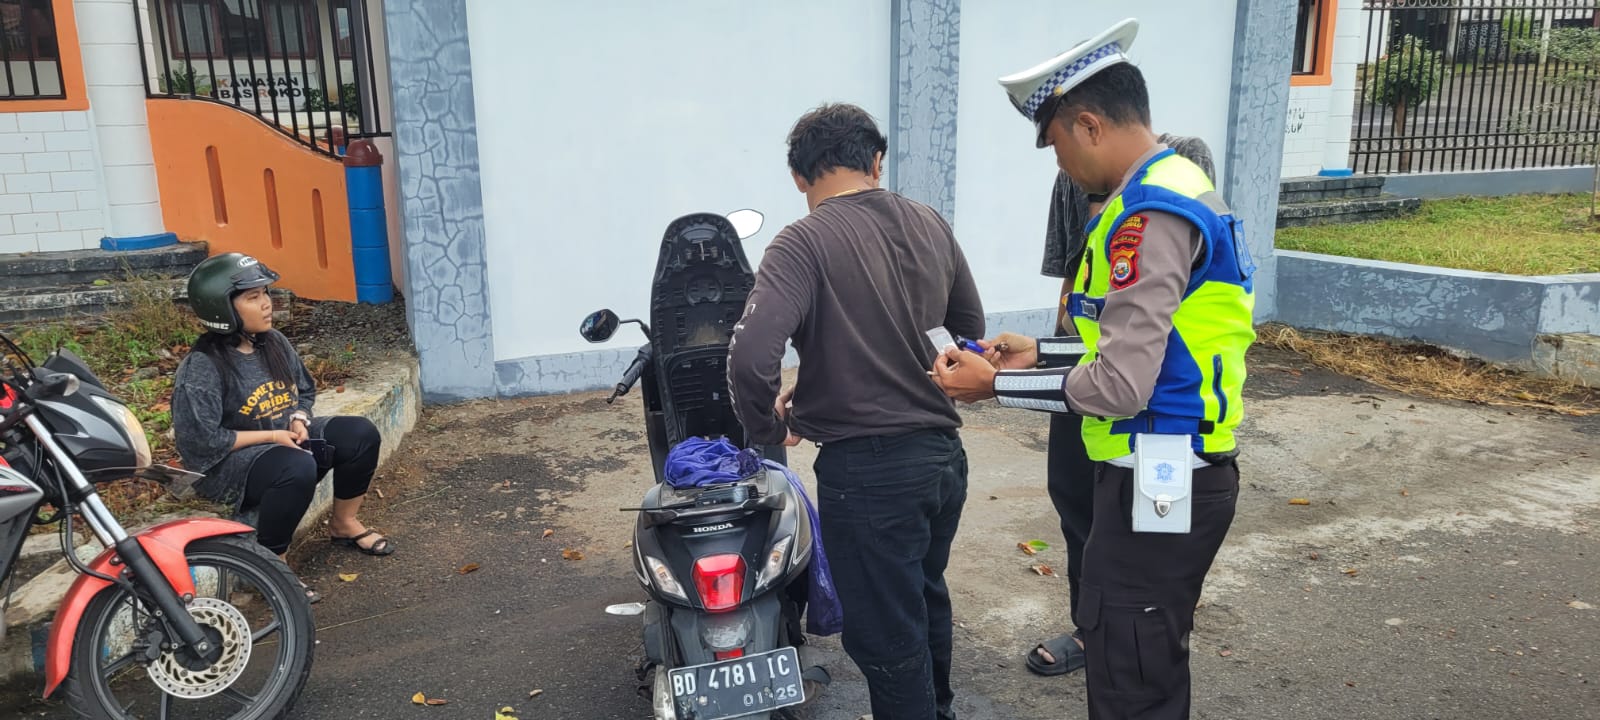 Remaja di Bengkulu Kedapatan Bawa Paket Mirip Sabu, Awalnya Dicegat Polisi karena Bonceng 3